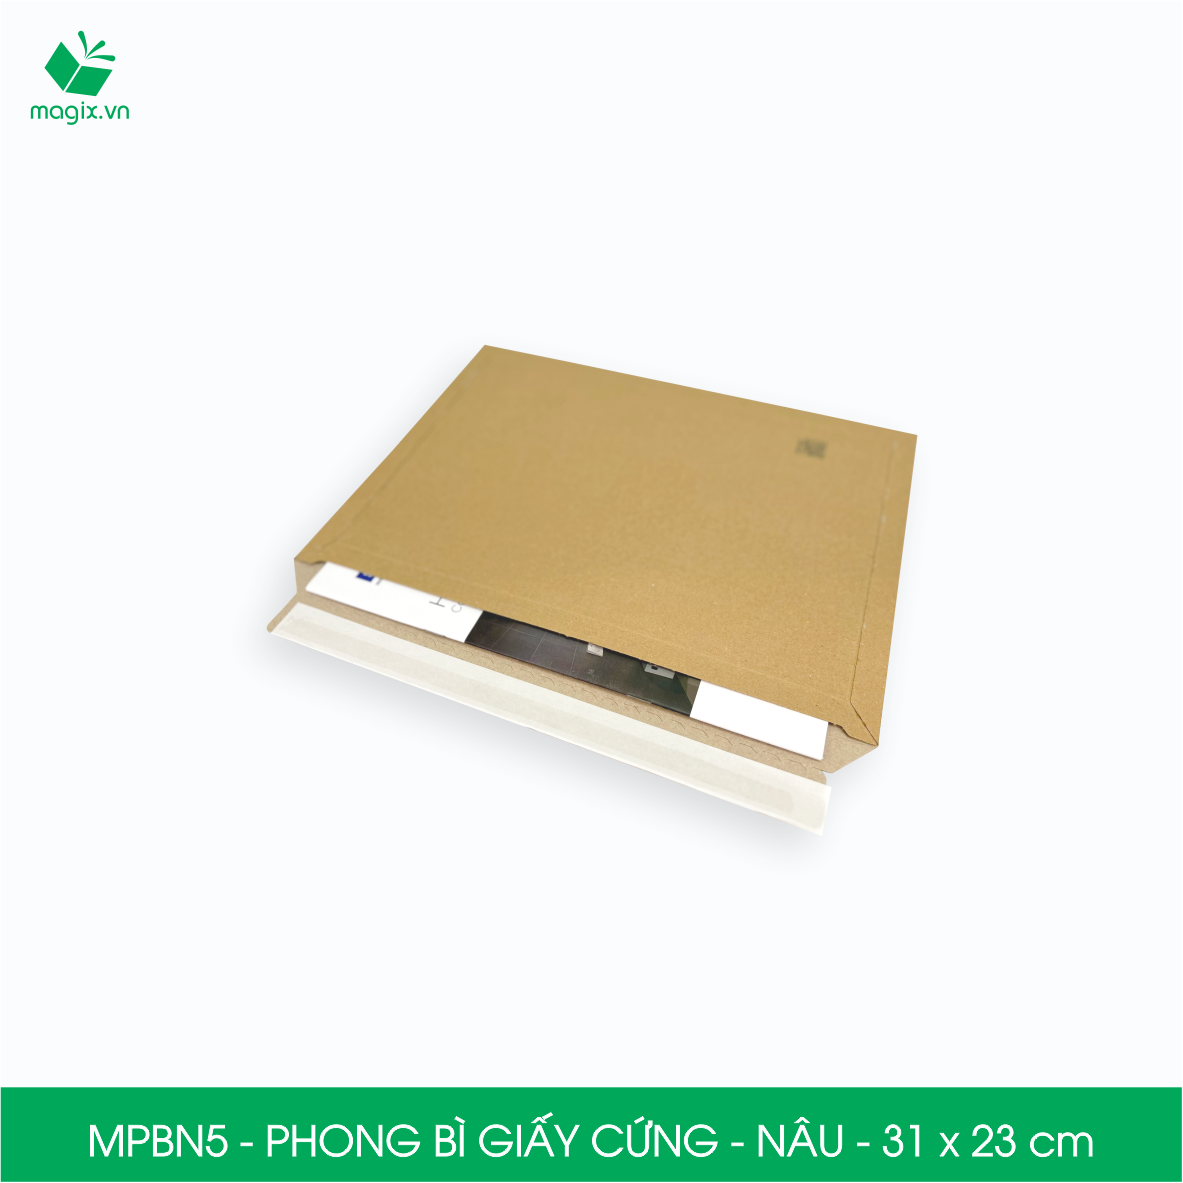 MPBN5 - 31x23 cm - Combo 100 phong bì giấy cứng đóng hàng màu nâu thay thế túi gói hàng